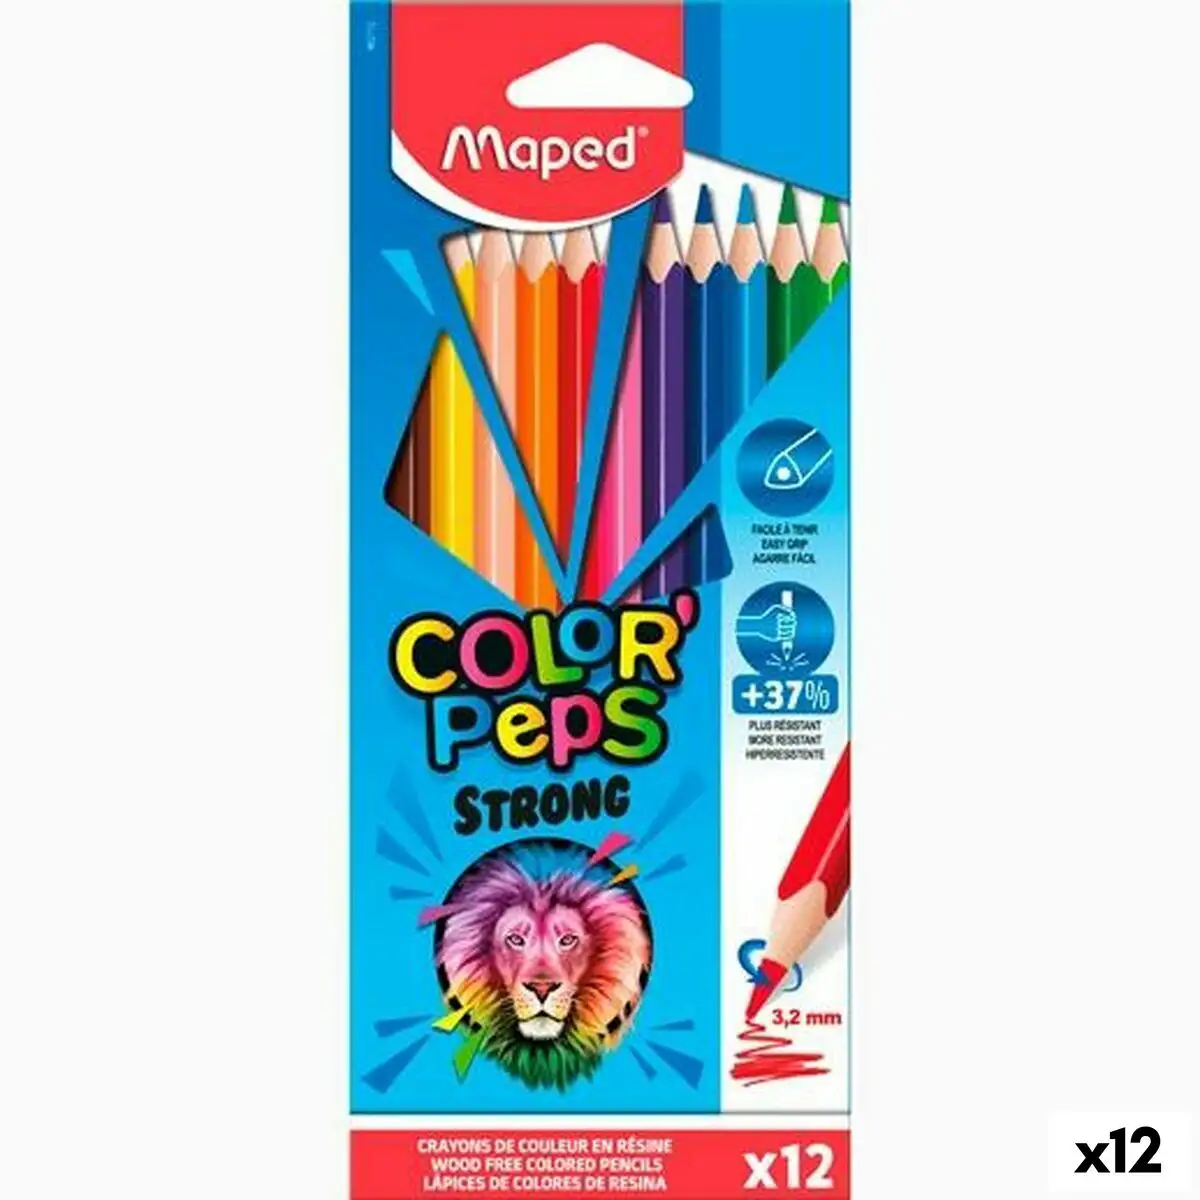 Crayons de couleur maped color peps strong multicouleur 12 pieces 12 unites _2913. DIAYTAR SENEGAL - Votre Univers Shopping Éclectique. Explorez nos offres variées et découvrez des articles qui embrassent la diversité et la polyvalence de vos besoins.